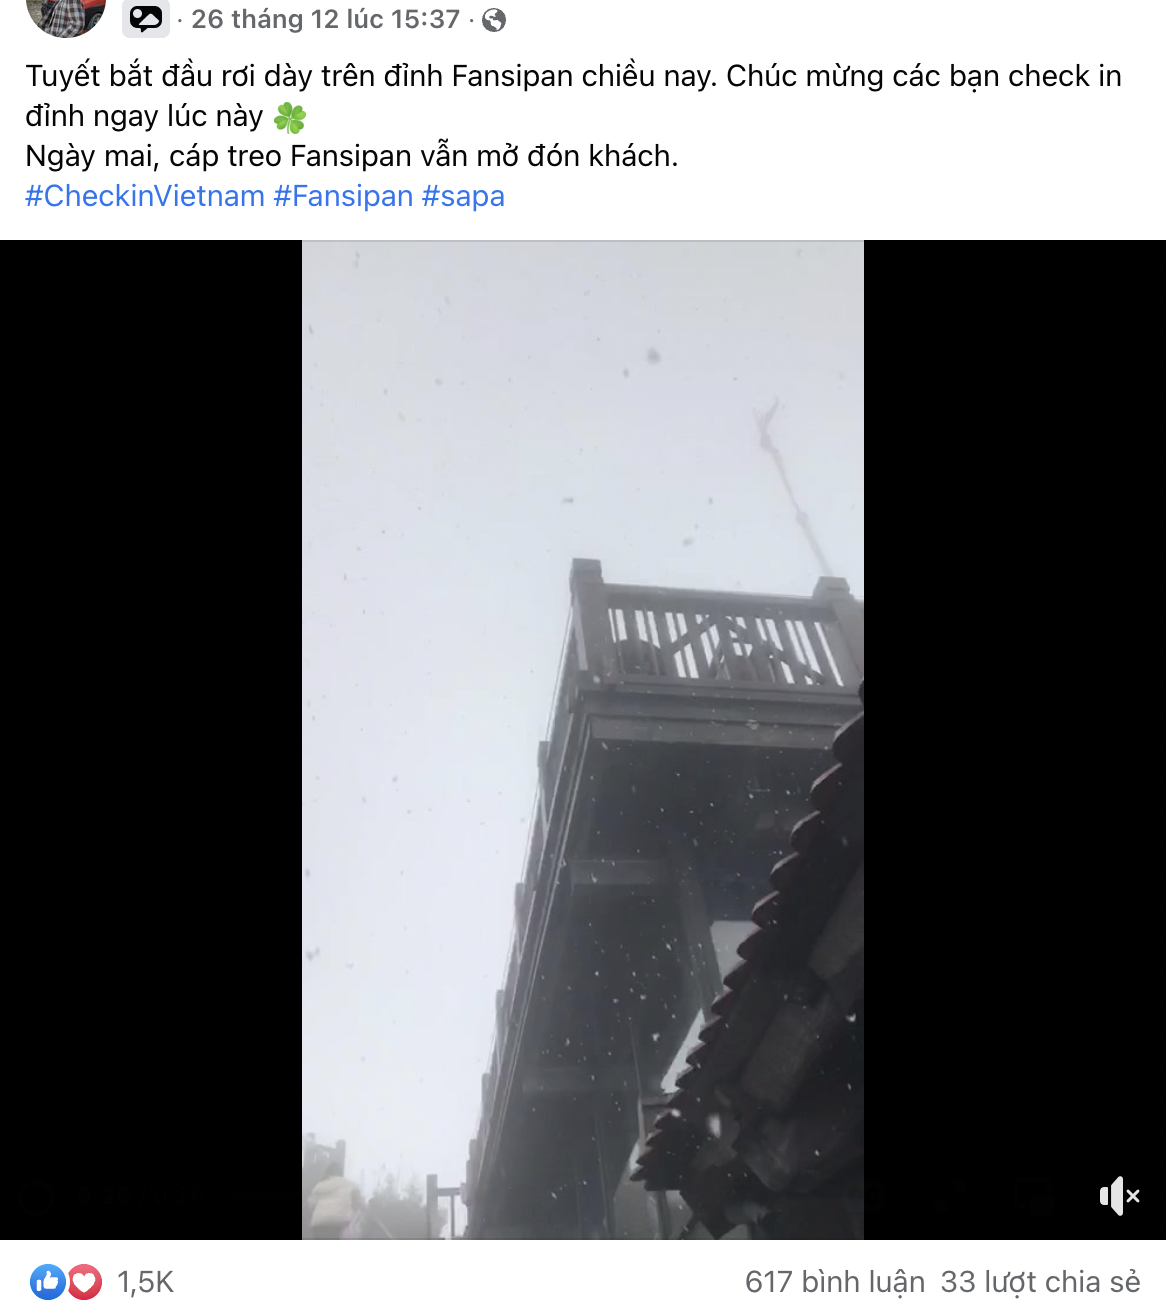 Hàng trăm người lặn lội lên Sa Pa ngắm tuyết rơi phải thất vọng đi về, lỗi tại quảng cáo sai sự thật hay do mình không kiểm chứng? 